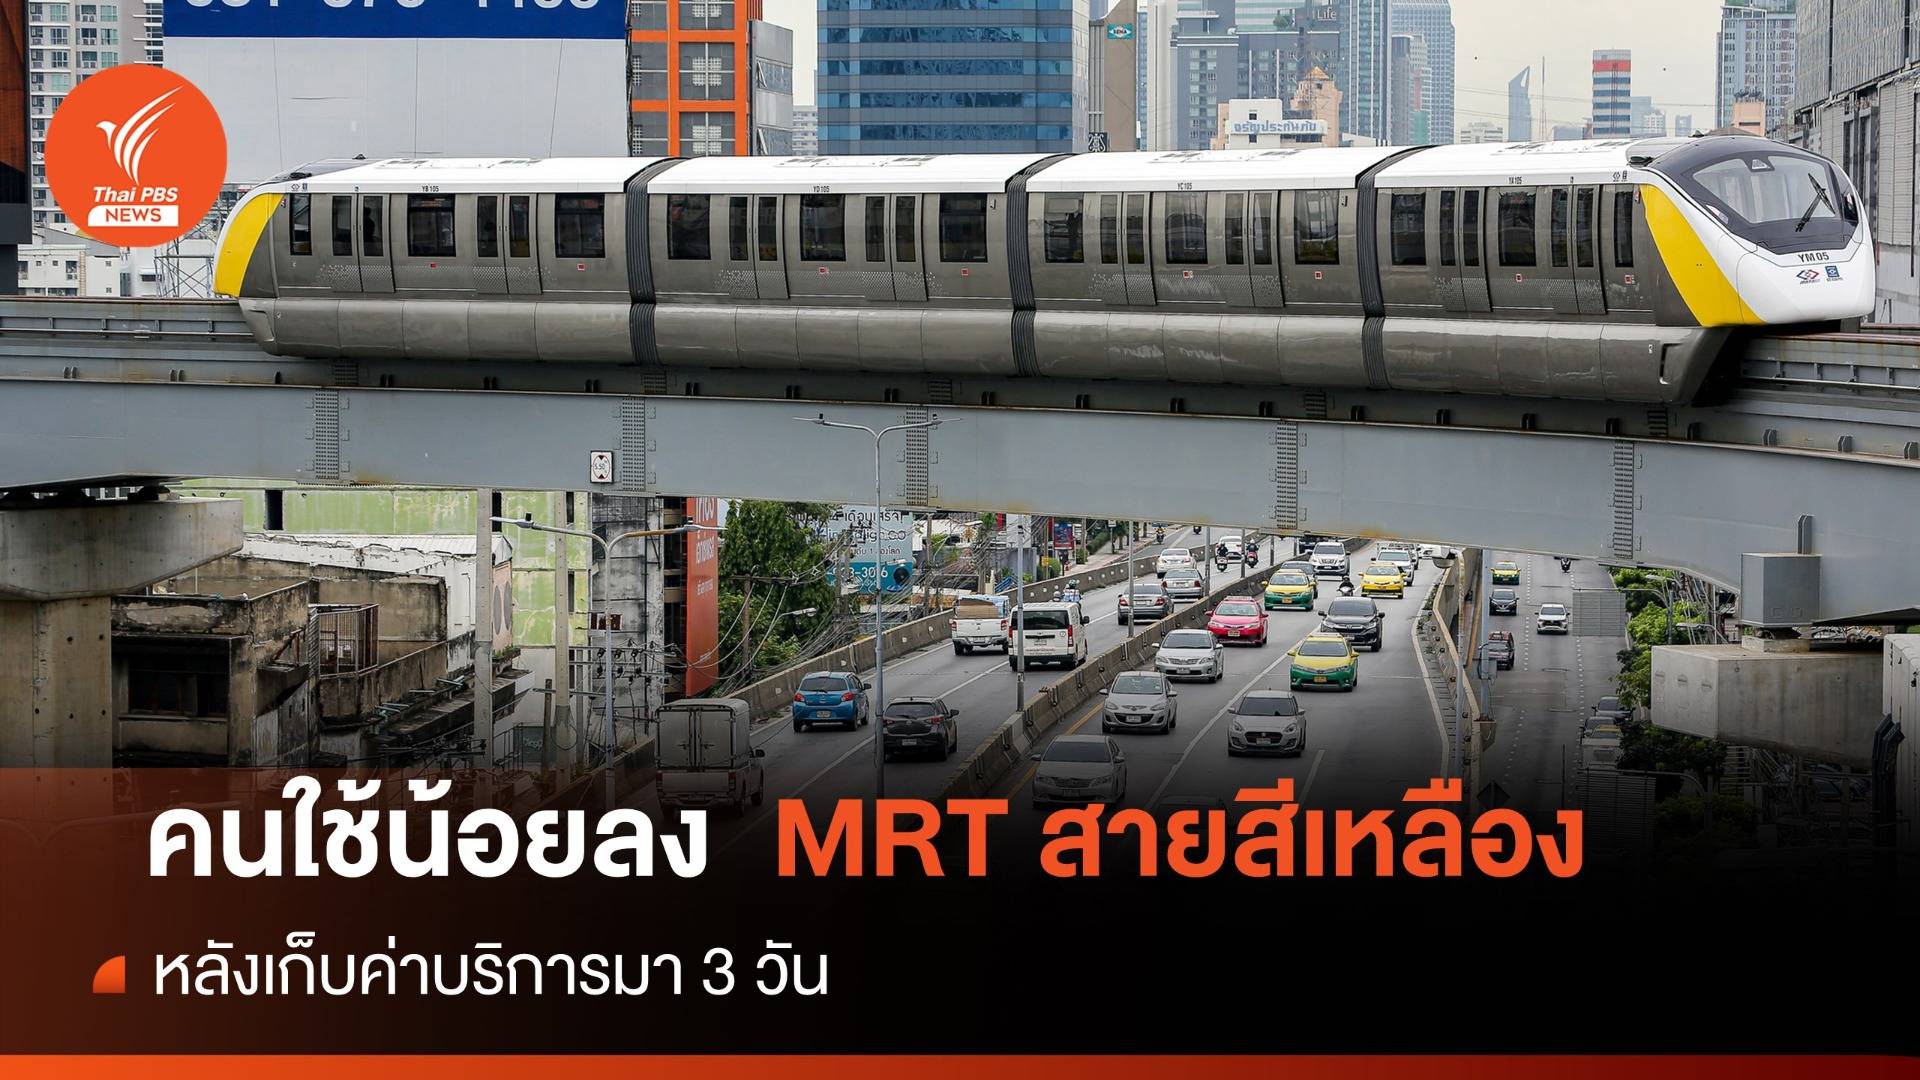 ผู้โดยสาร MRT สายสีเหลืองลดฮวบ 3-4 หมื่นคน-เที่ยวหลังเก็บเงิน